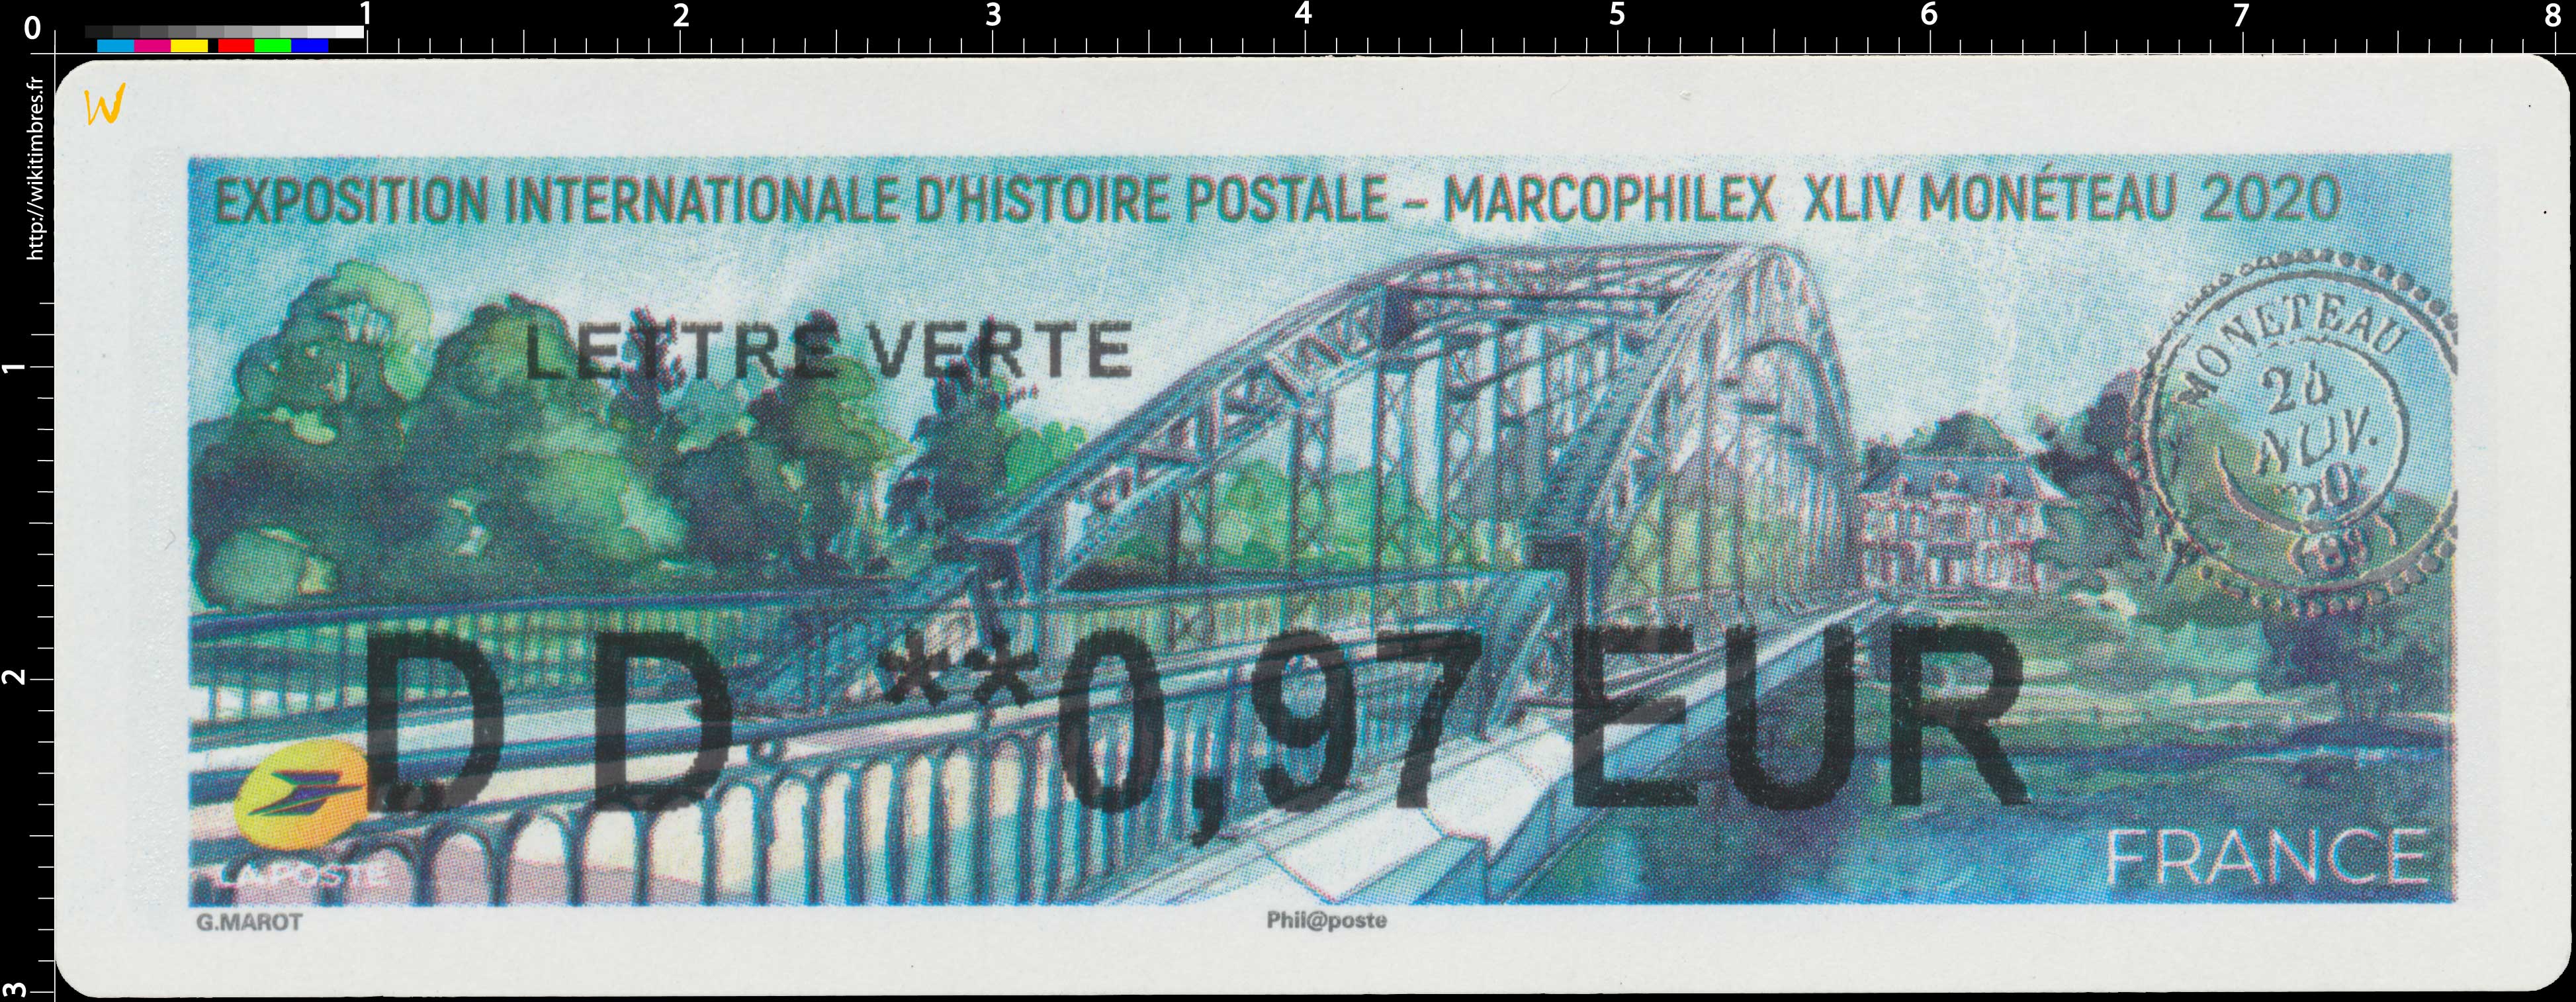 2020  Exposition internationale d'histoire postale - Macophilex XLIV Monéteau